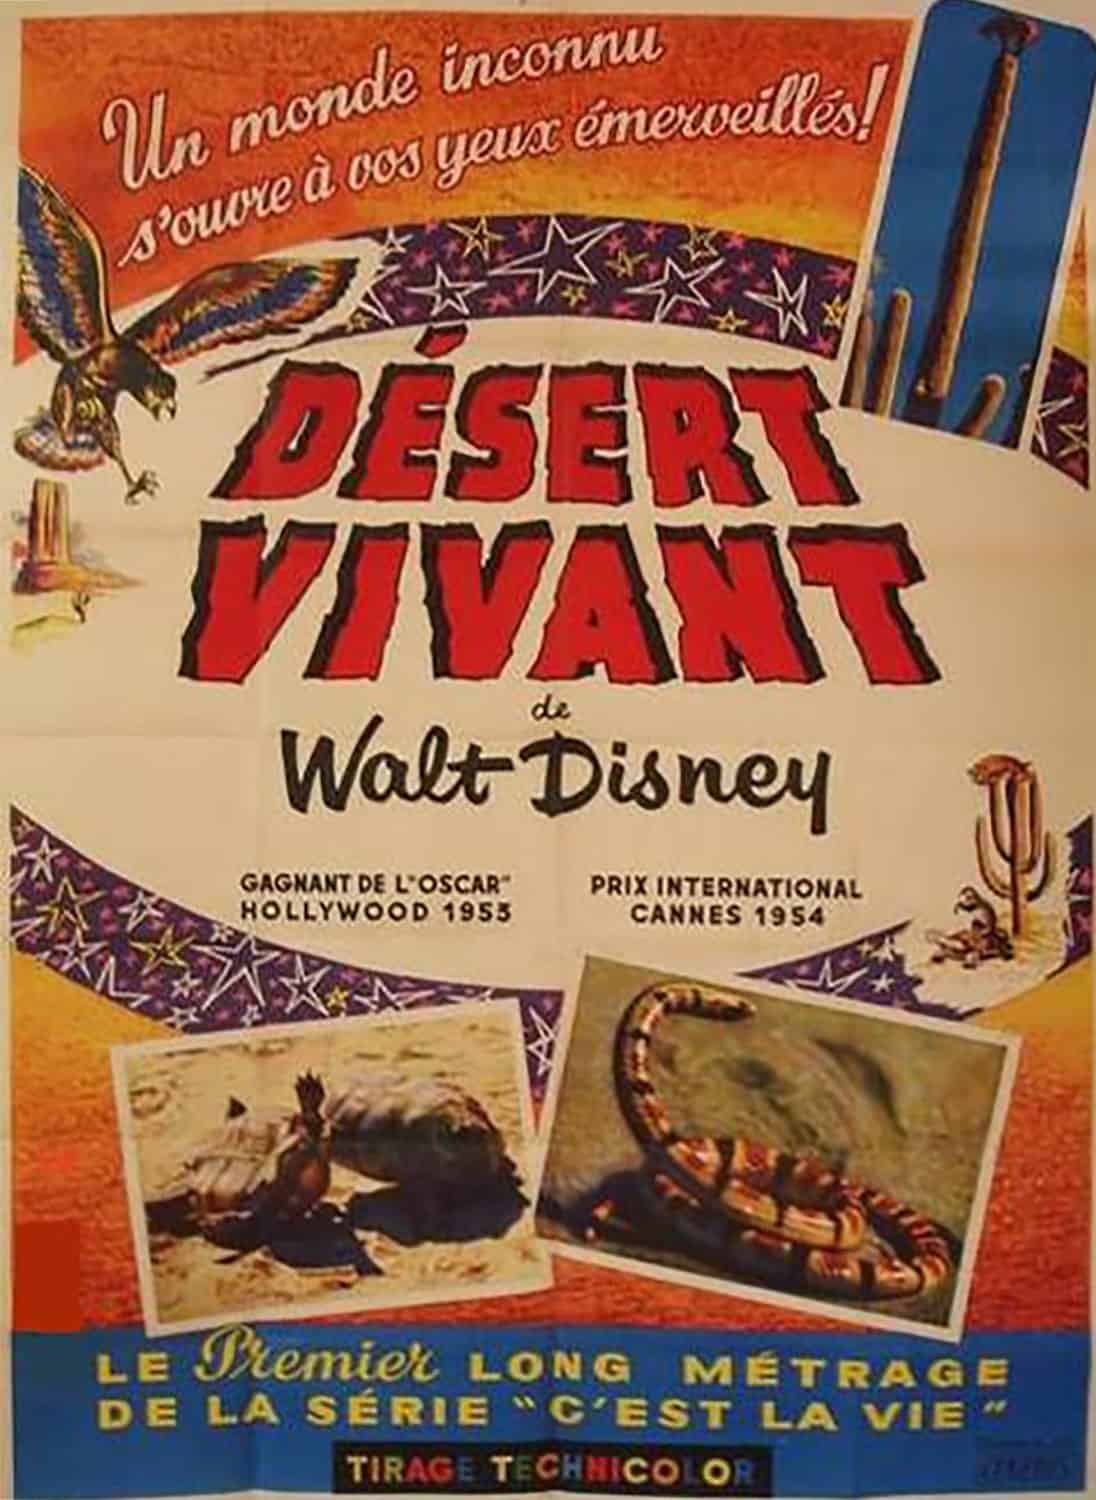 Affiche française vintage pour "Désert Vivant" de Walt Disney, avec un texte rouge en gras, des images d'un lézard et d'oiseaux et des illustrations décoratives de cactus. Il met en lumière l'Oscar remporté par le film et